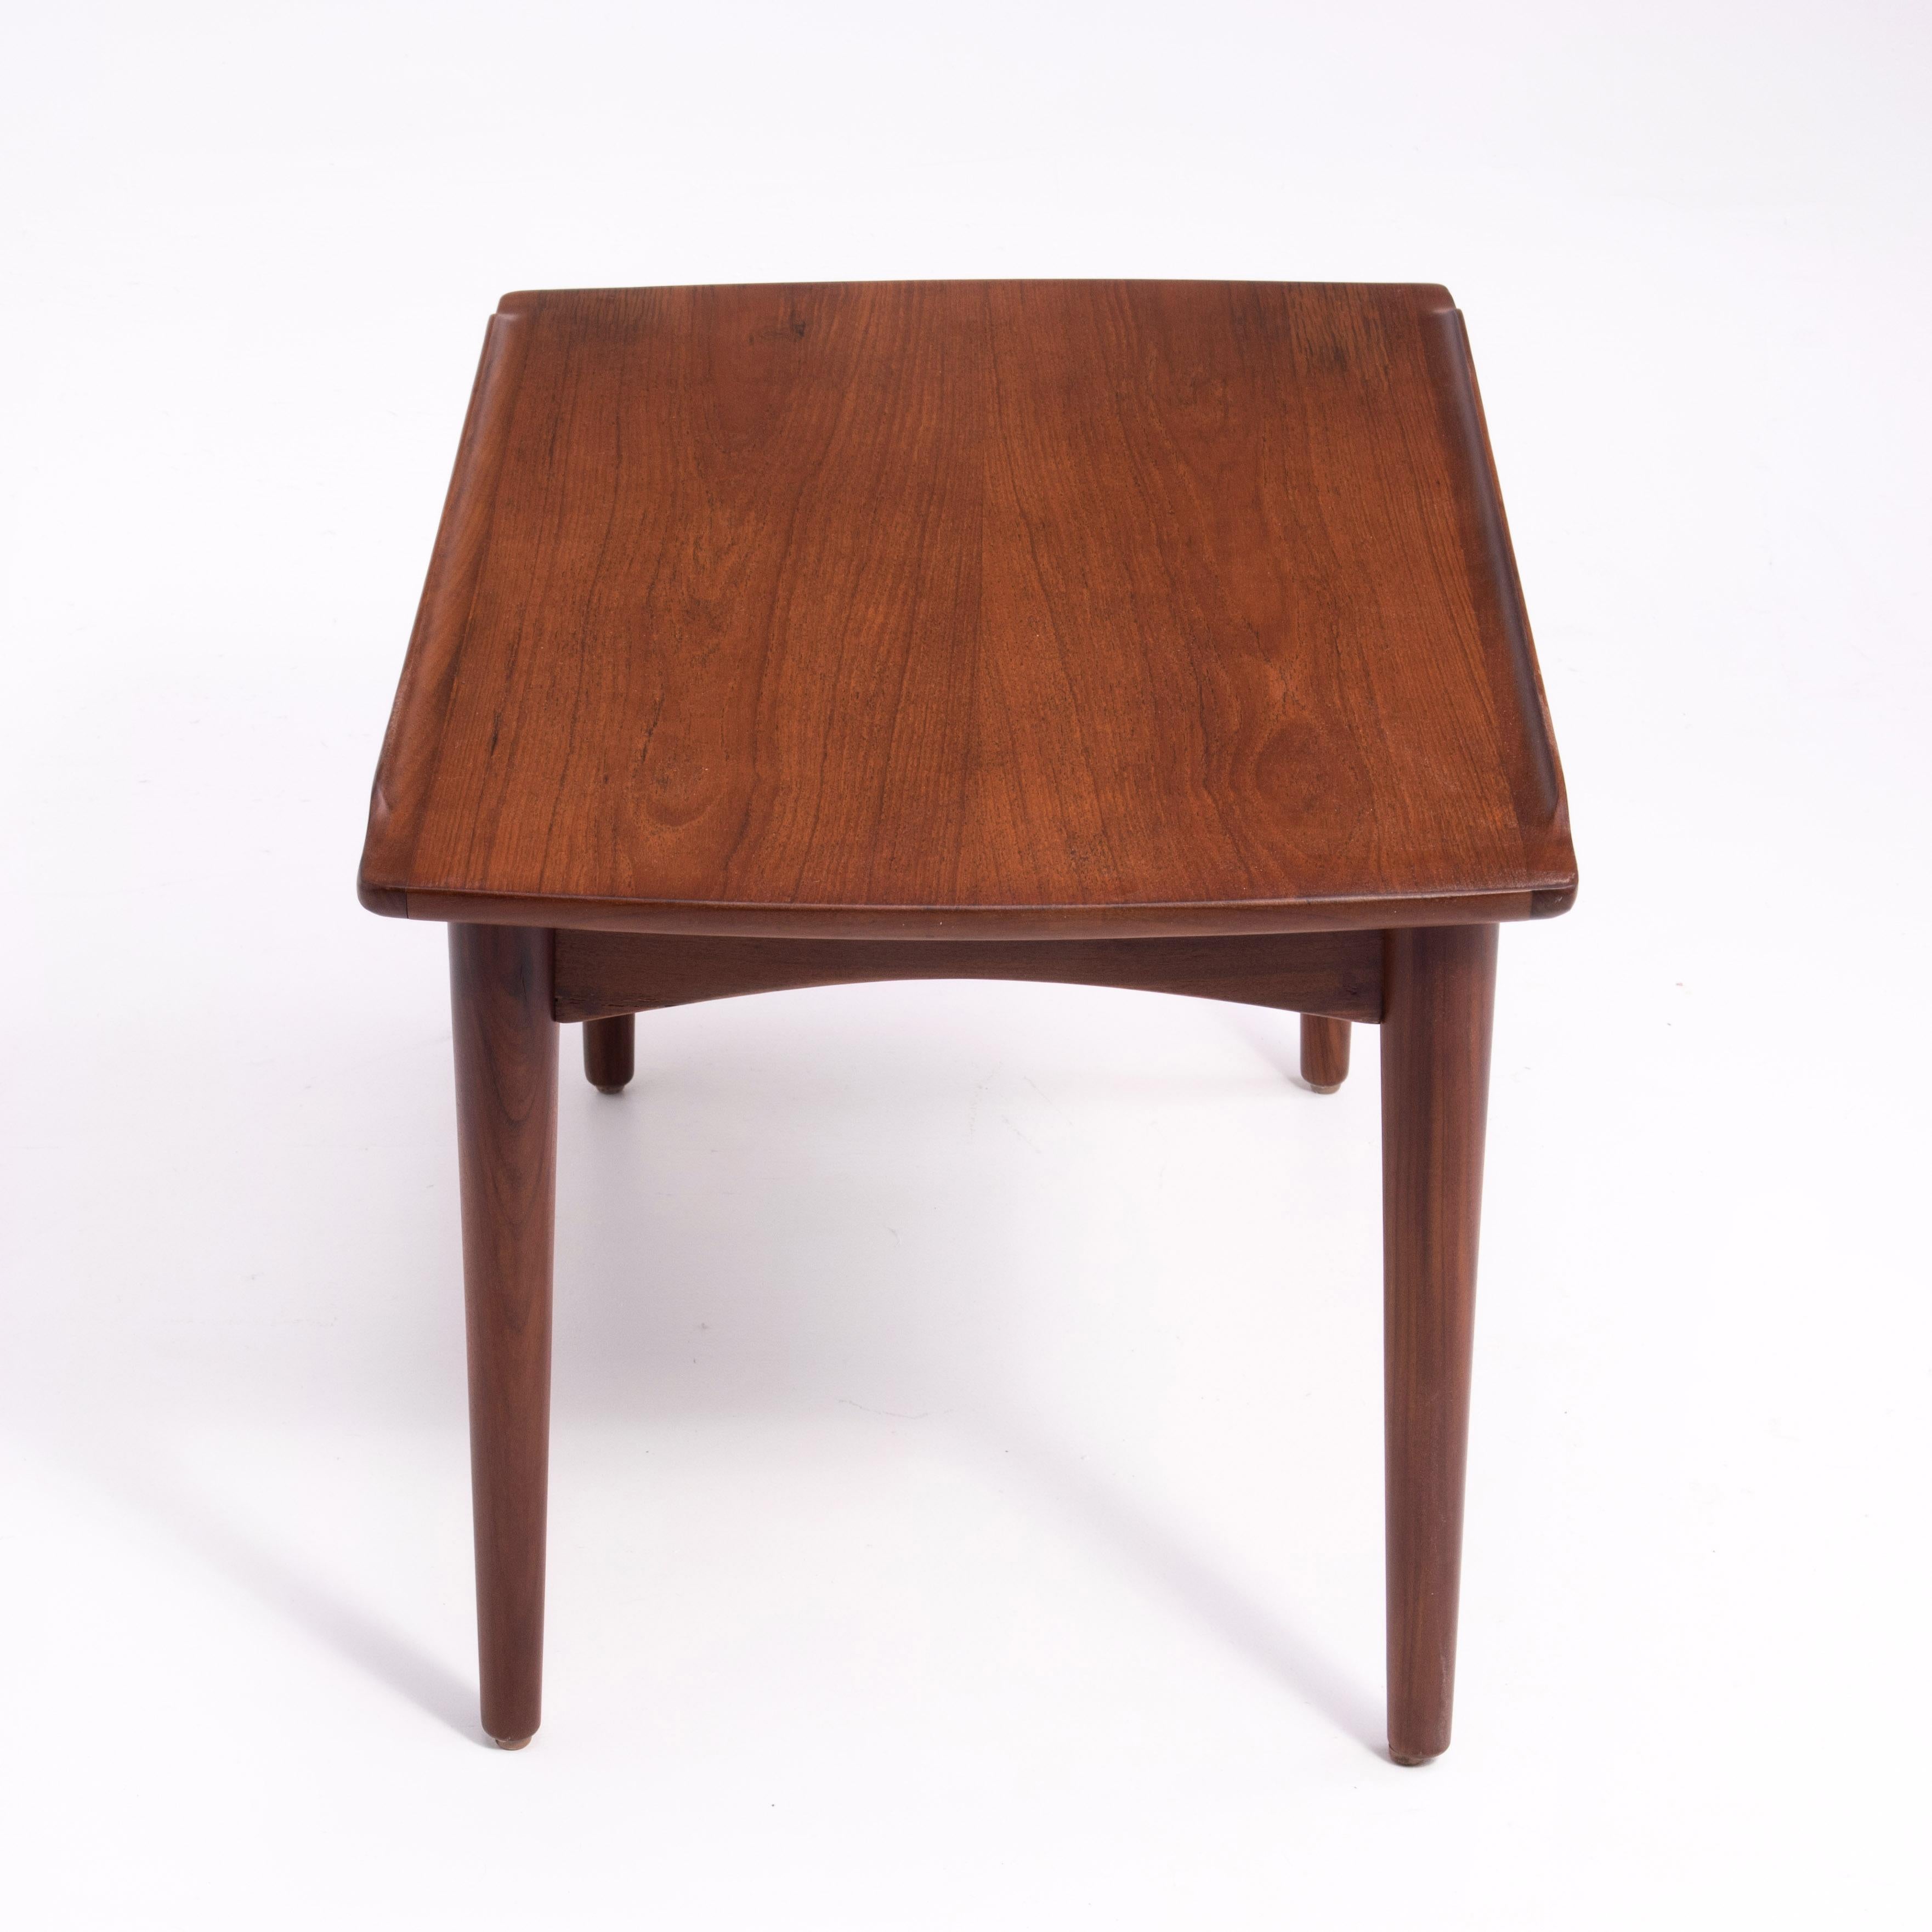 Danish Modern Teak Dowel Leg Side Table After Grete Jalk Marked B. J. 1970s For Sale 3